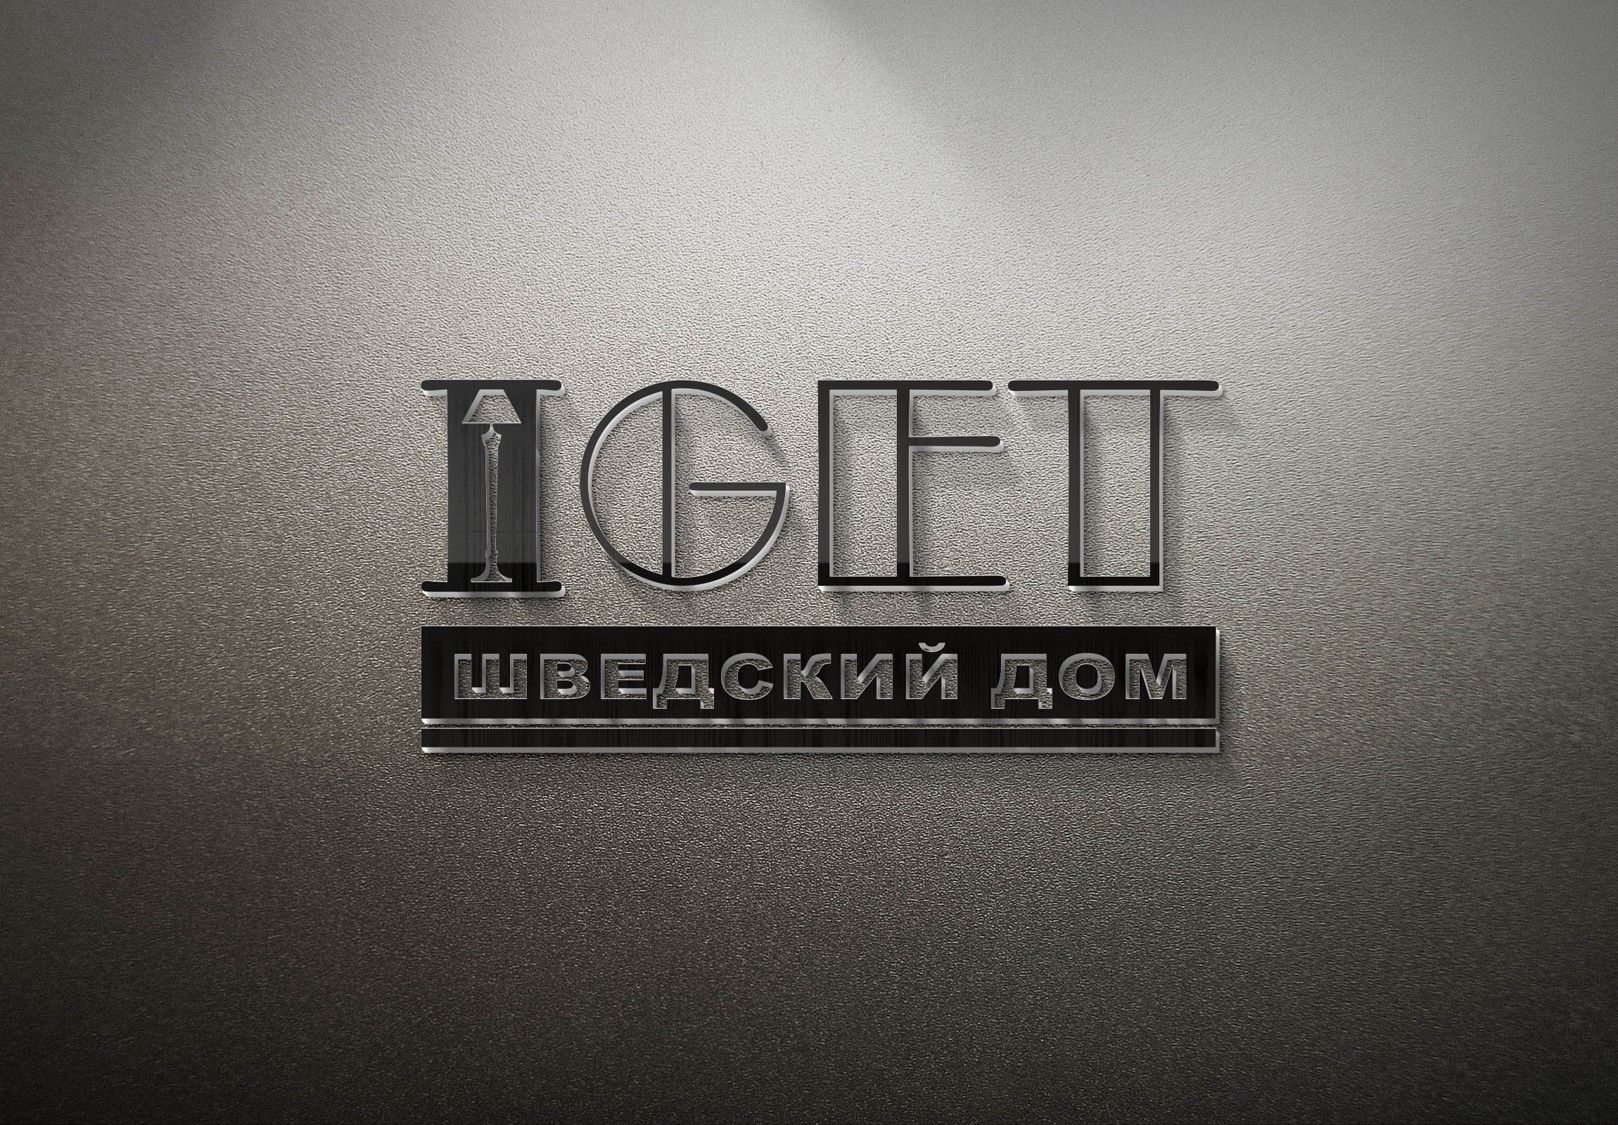 Логотип и фирменный стиль для Iget Шведский дом - дизайнер na_amangeldi